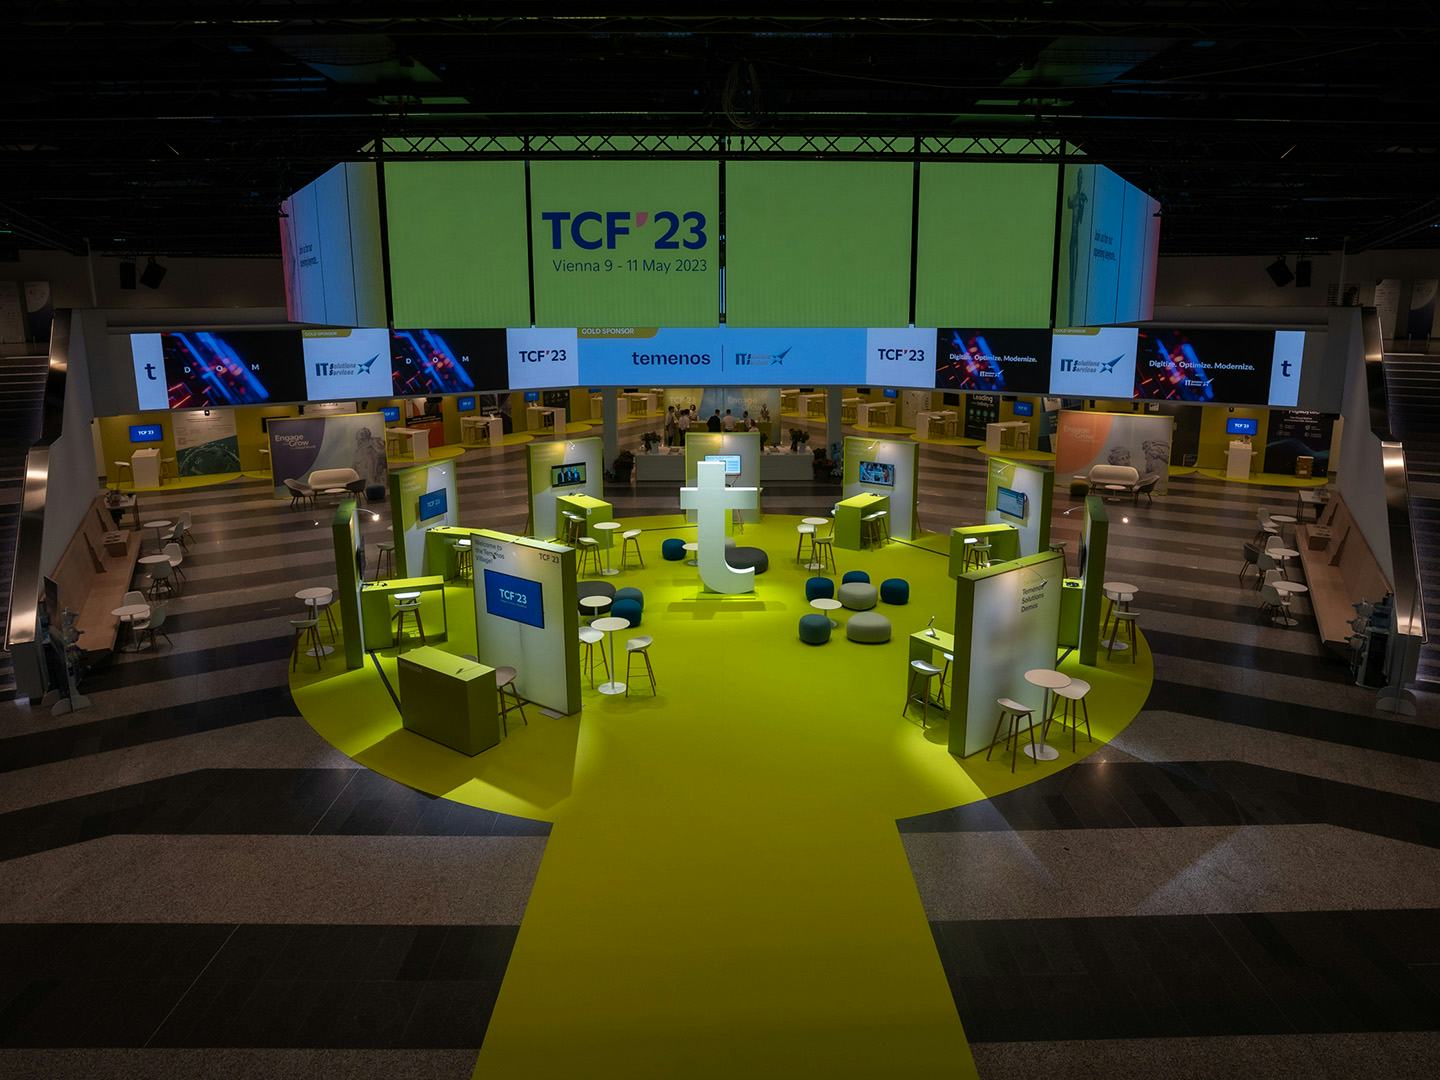 Foto: Dunkler Raum mit gelben Teppich, Networking-Bereichen und beleuchteten LED-Flaechen